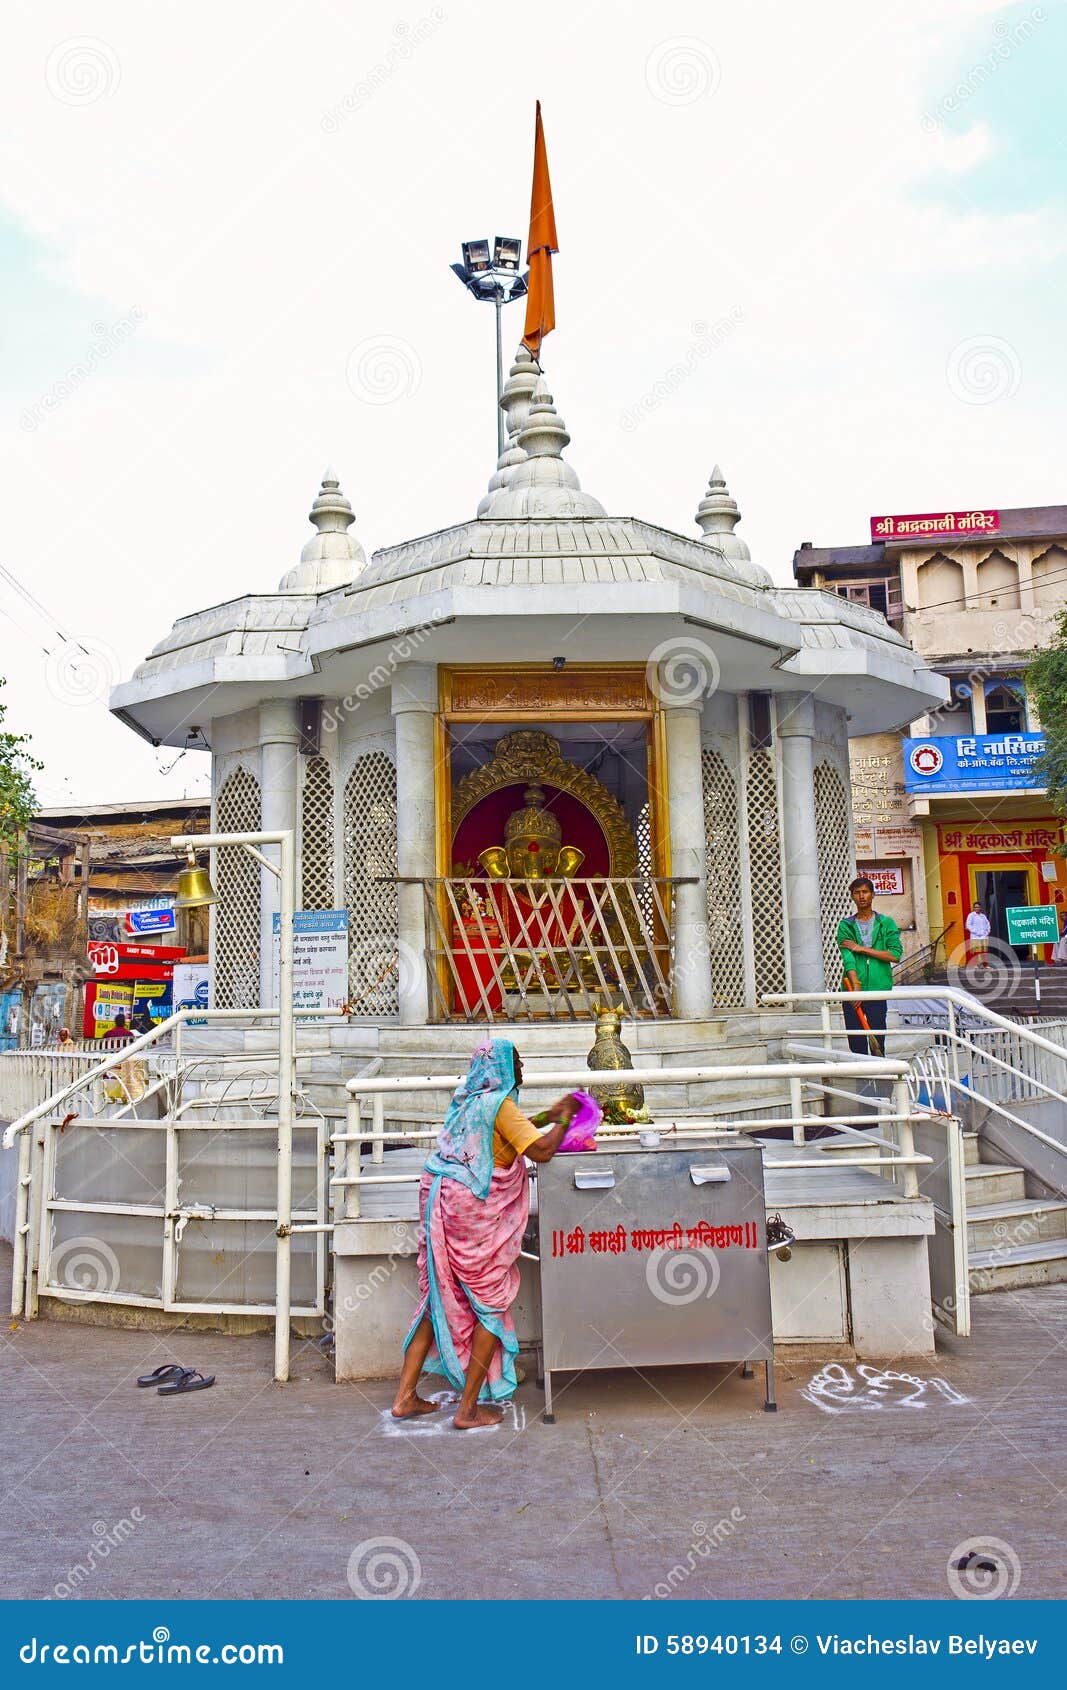 Nashik Bhadrakali Fucking Videos - Ganesha temple editorial stock image. Image of asia, people - 58940134